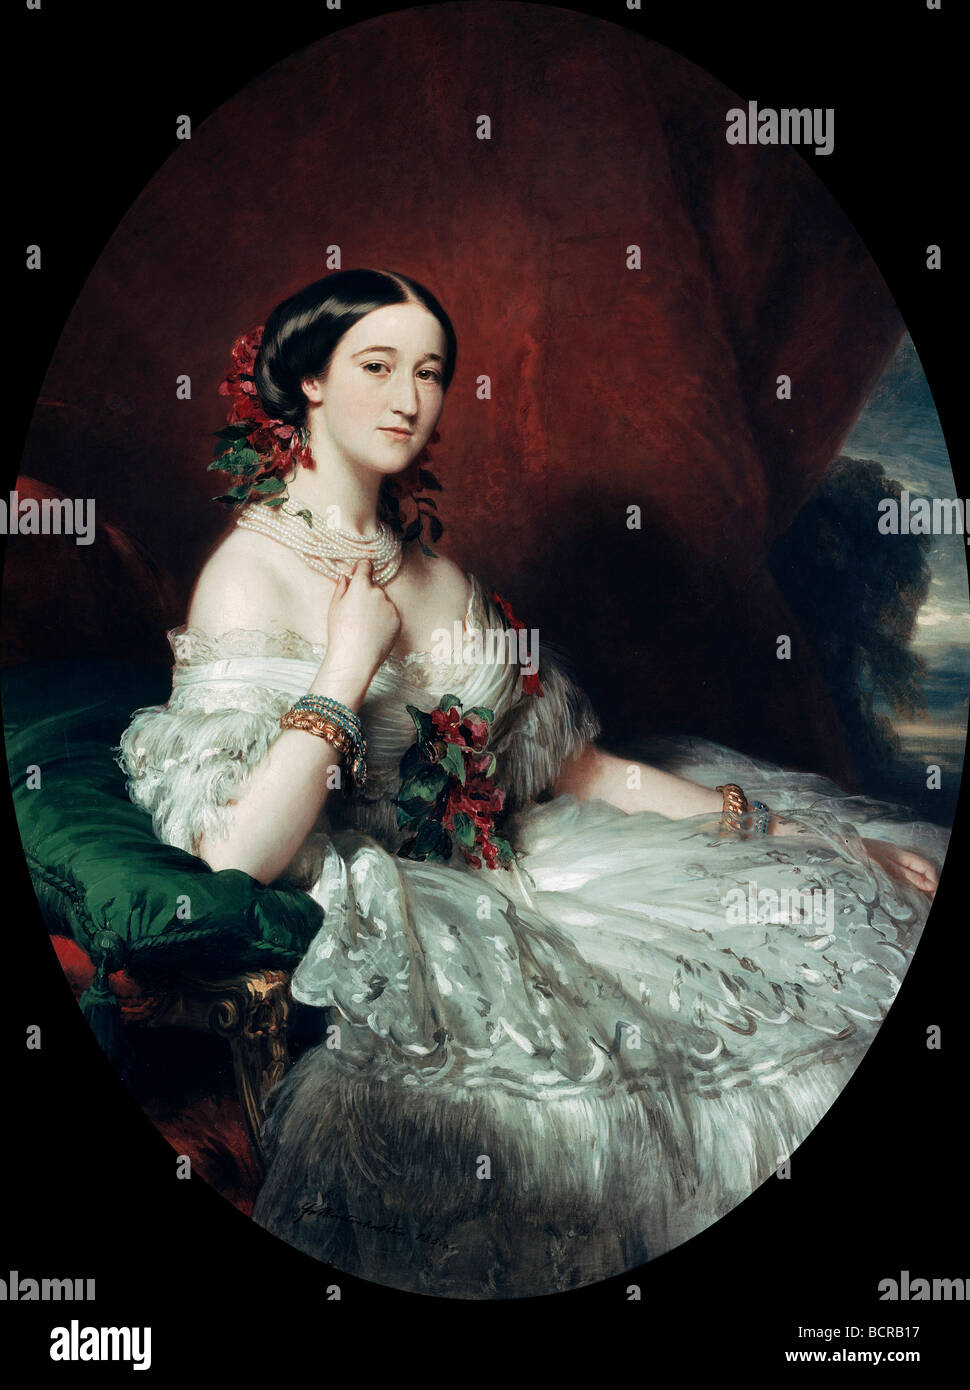 La duchesse de Berwick et Alba par Franz Xaver Winterhalter, 1805-1873, l'Espagne, Madrid, collection du duc de Berwick et Alba Banque D'Images